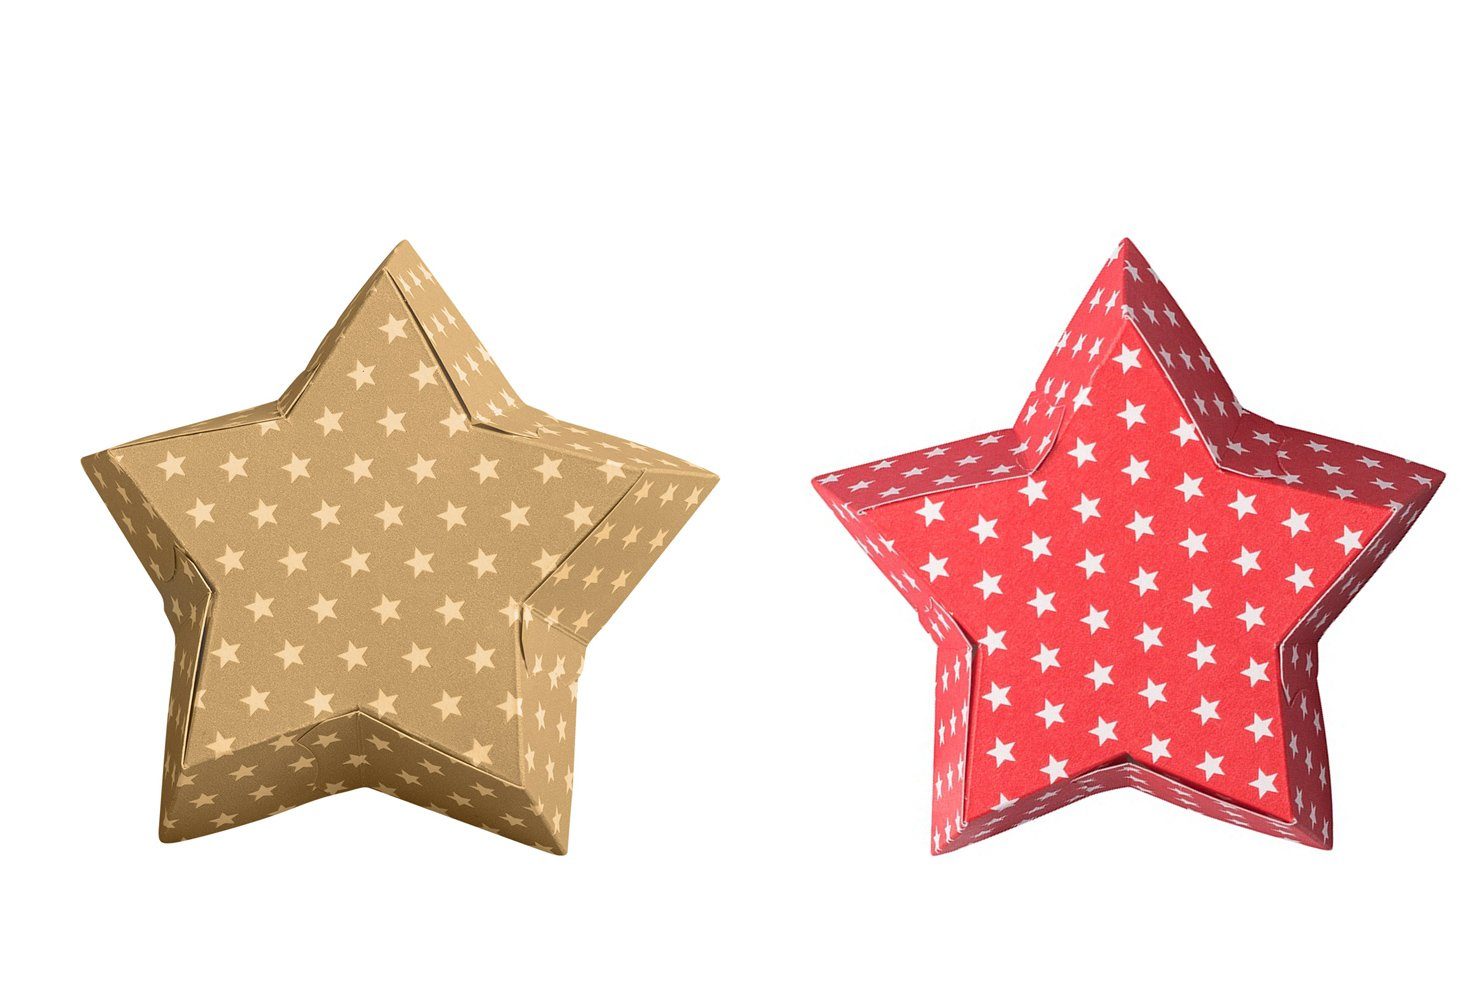 Demmler Backform 2er Stern Backform Set in rot & gold, weihnachtliche Backformen mit weißen Sternen - Made in Germany